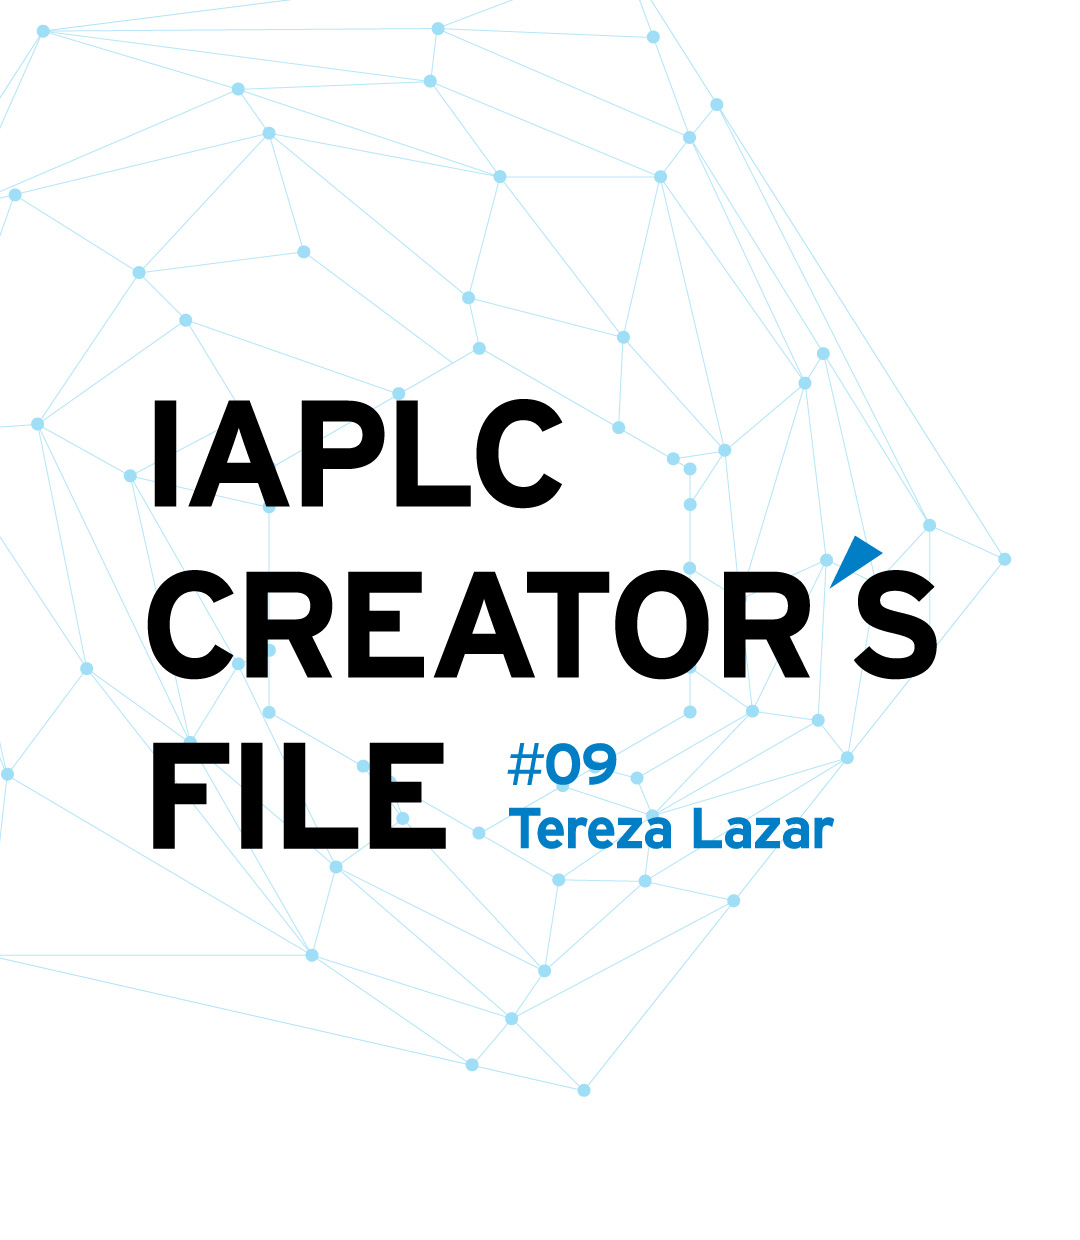 IAPLC CREATOR’S FILE #09 Tereza Lazar